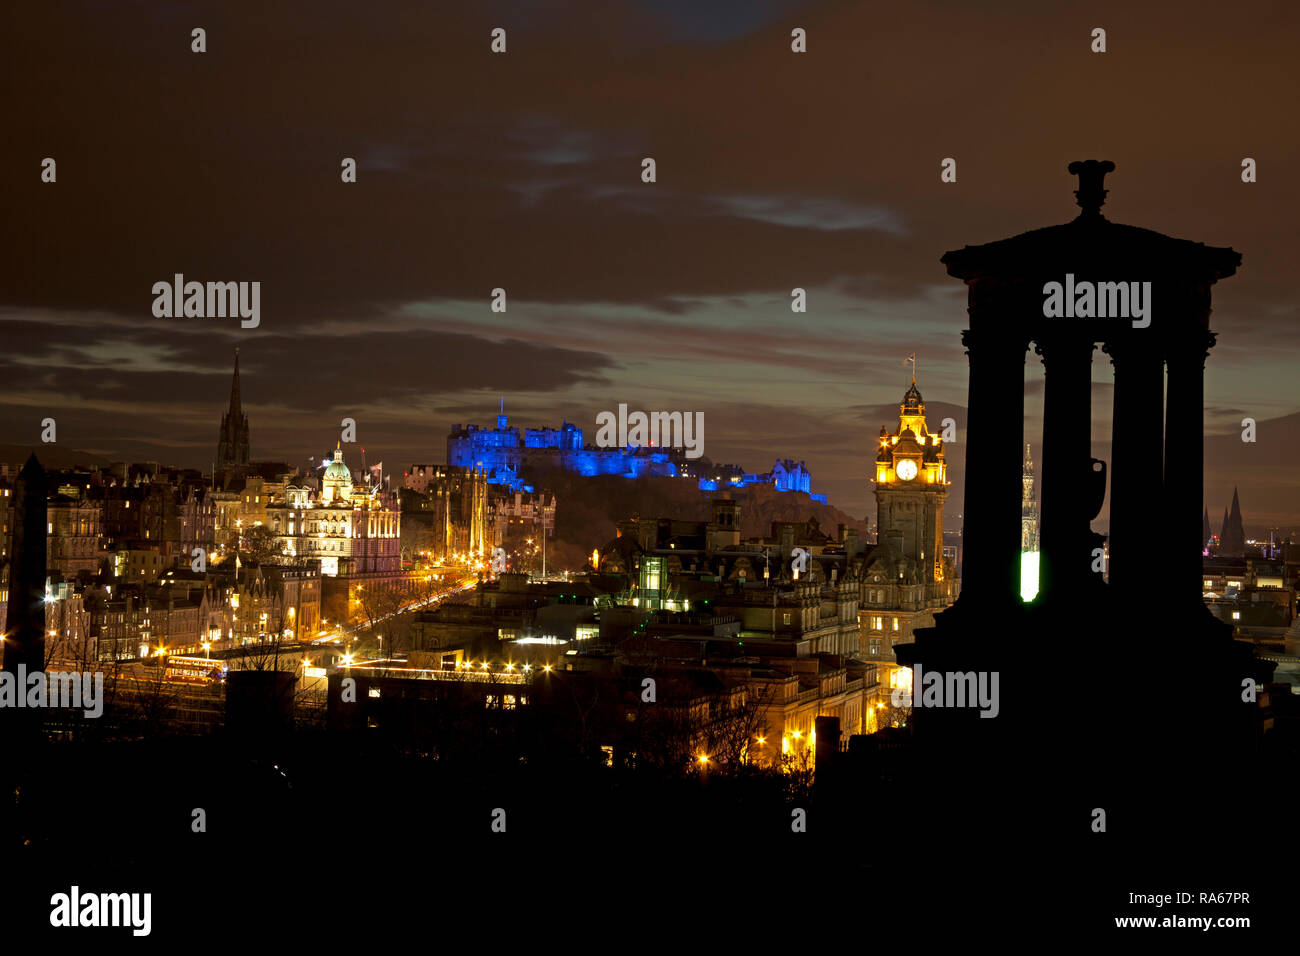 Edimburgo, Scozia, Regno Unito. 01 gennaio 2019. Skyline della capitale illuminata dal centro città da Calton Hill con il castello illuminato blu con proiettori per il nuovo anno. Foto Stock